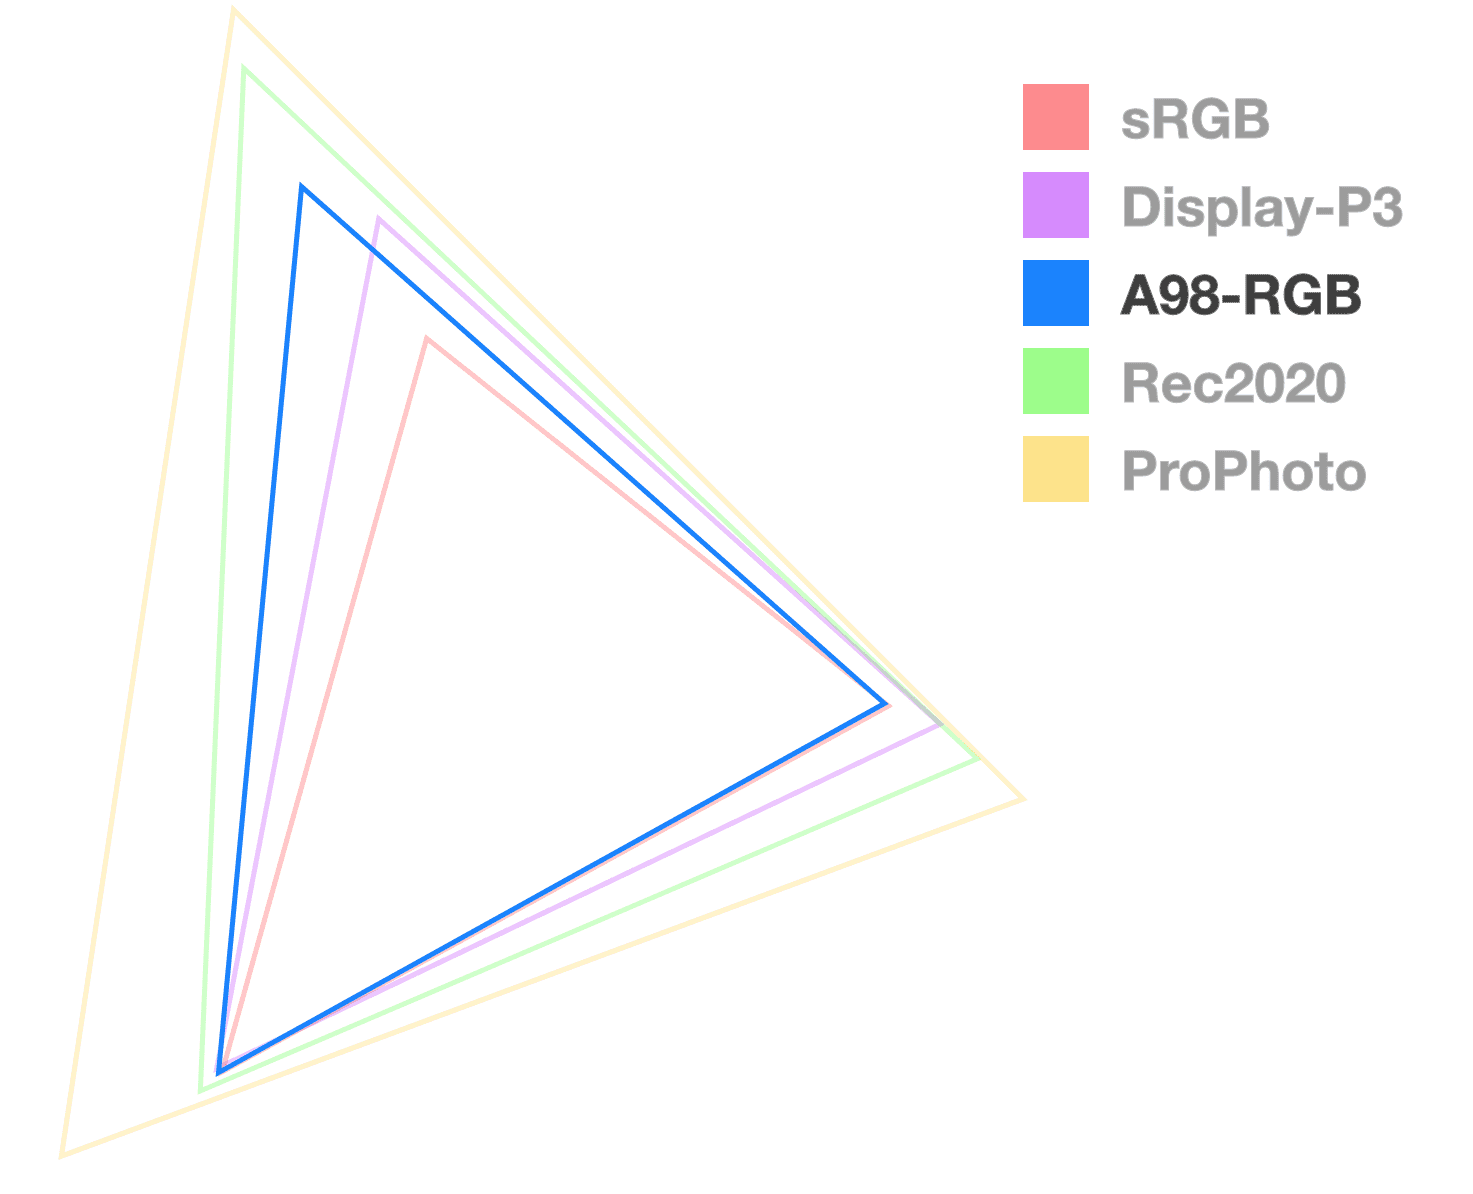 مثلث A98 تنها یک مثلث کاملاً مات است که به تجسم اندازه وسعت کمک می کند. به نظر می رسد مثلث اندازه های متوسط ​​است.